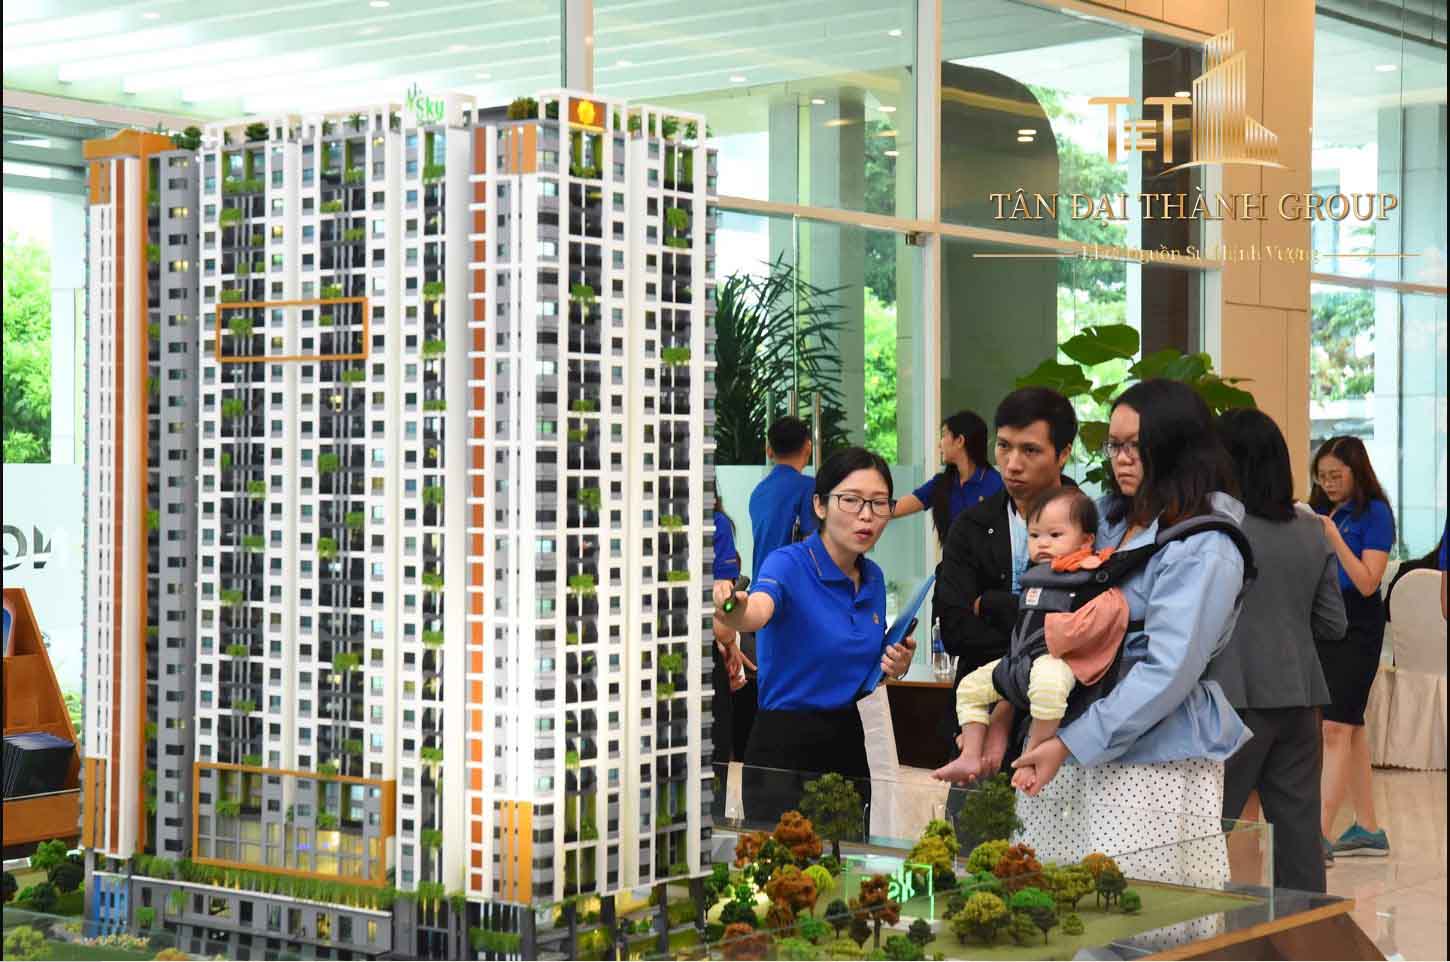 Ngân hàng Nhà nước Việt Nam cũng đã có các văn bản chỉ đạo về việc cấp tín dụng với lĩnh vực bất động sản góp phần tháo gỡ